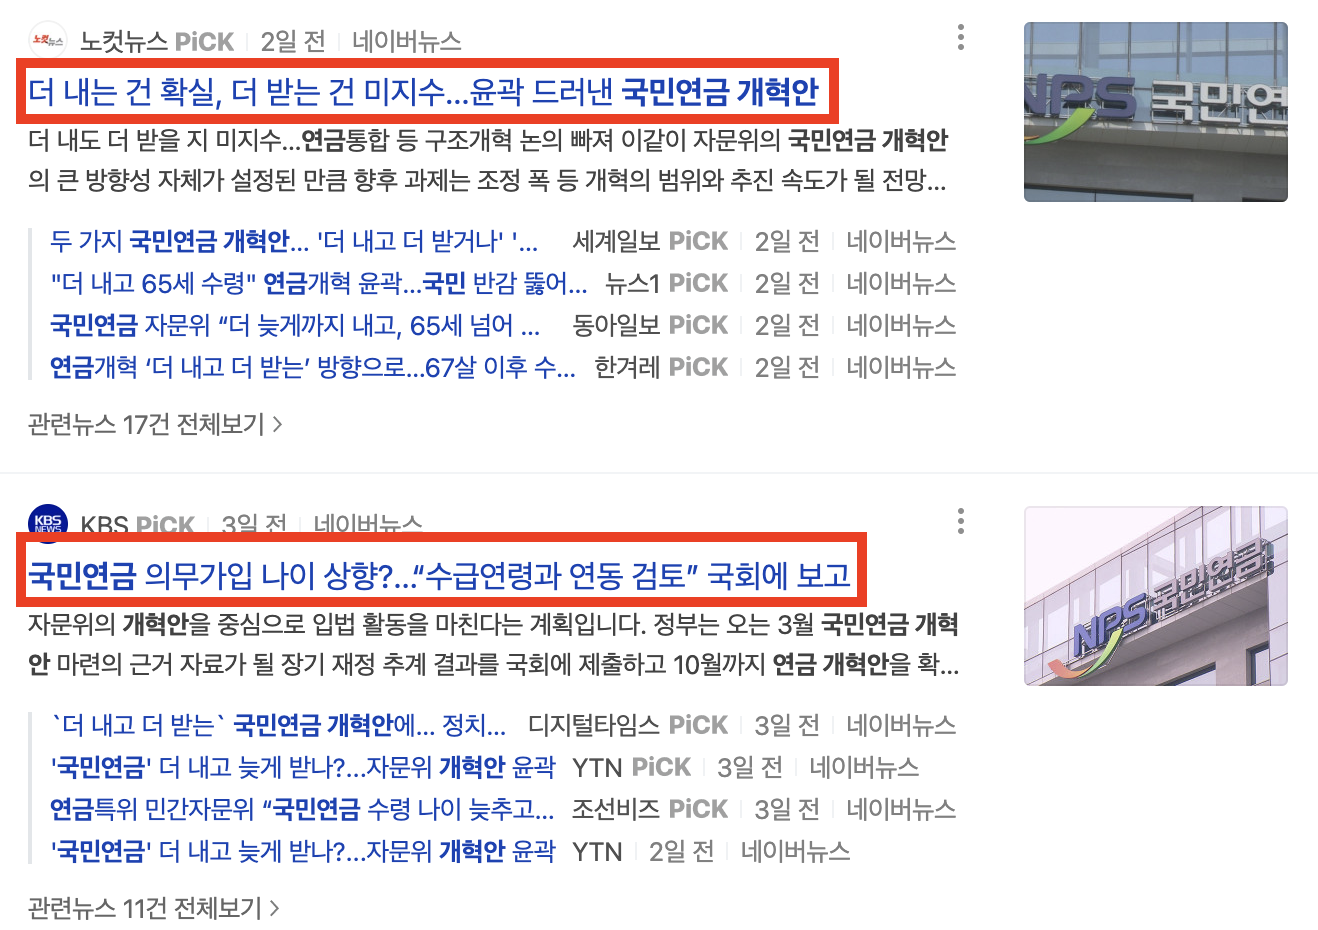 국민연금 수령나이 개혁 관련 뉴스